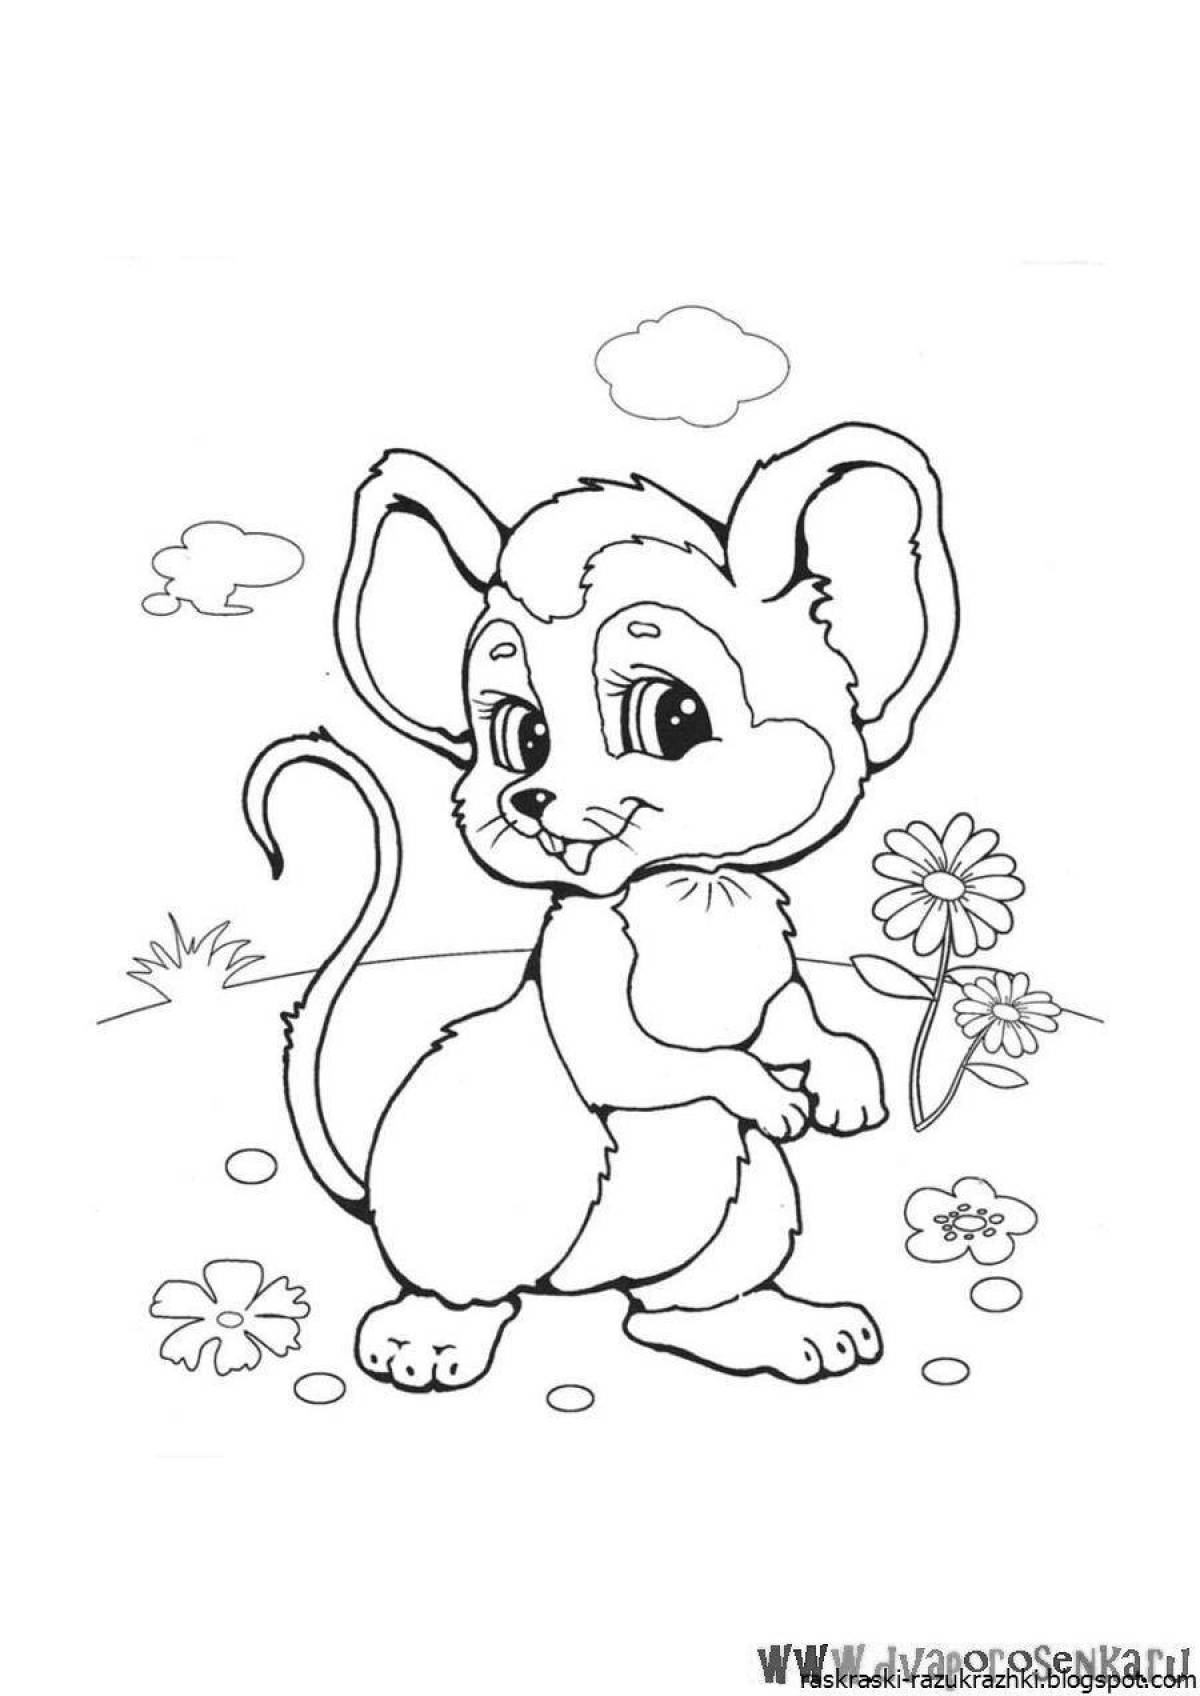 Раскраска милая норушка мышь